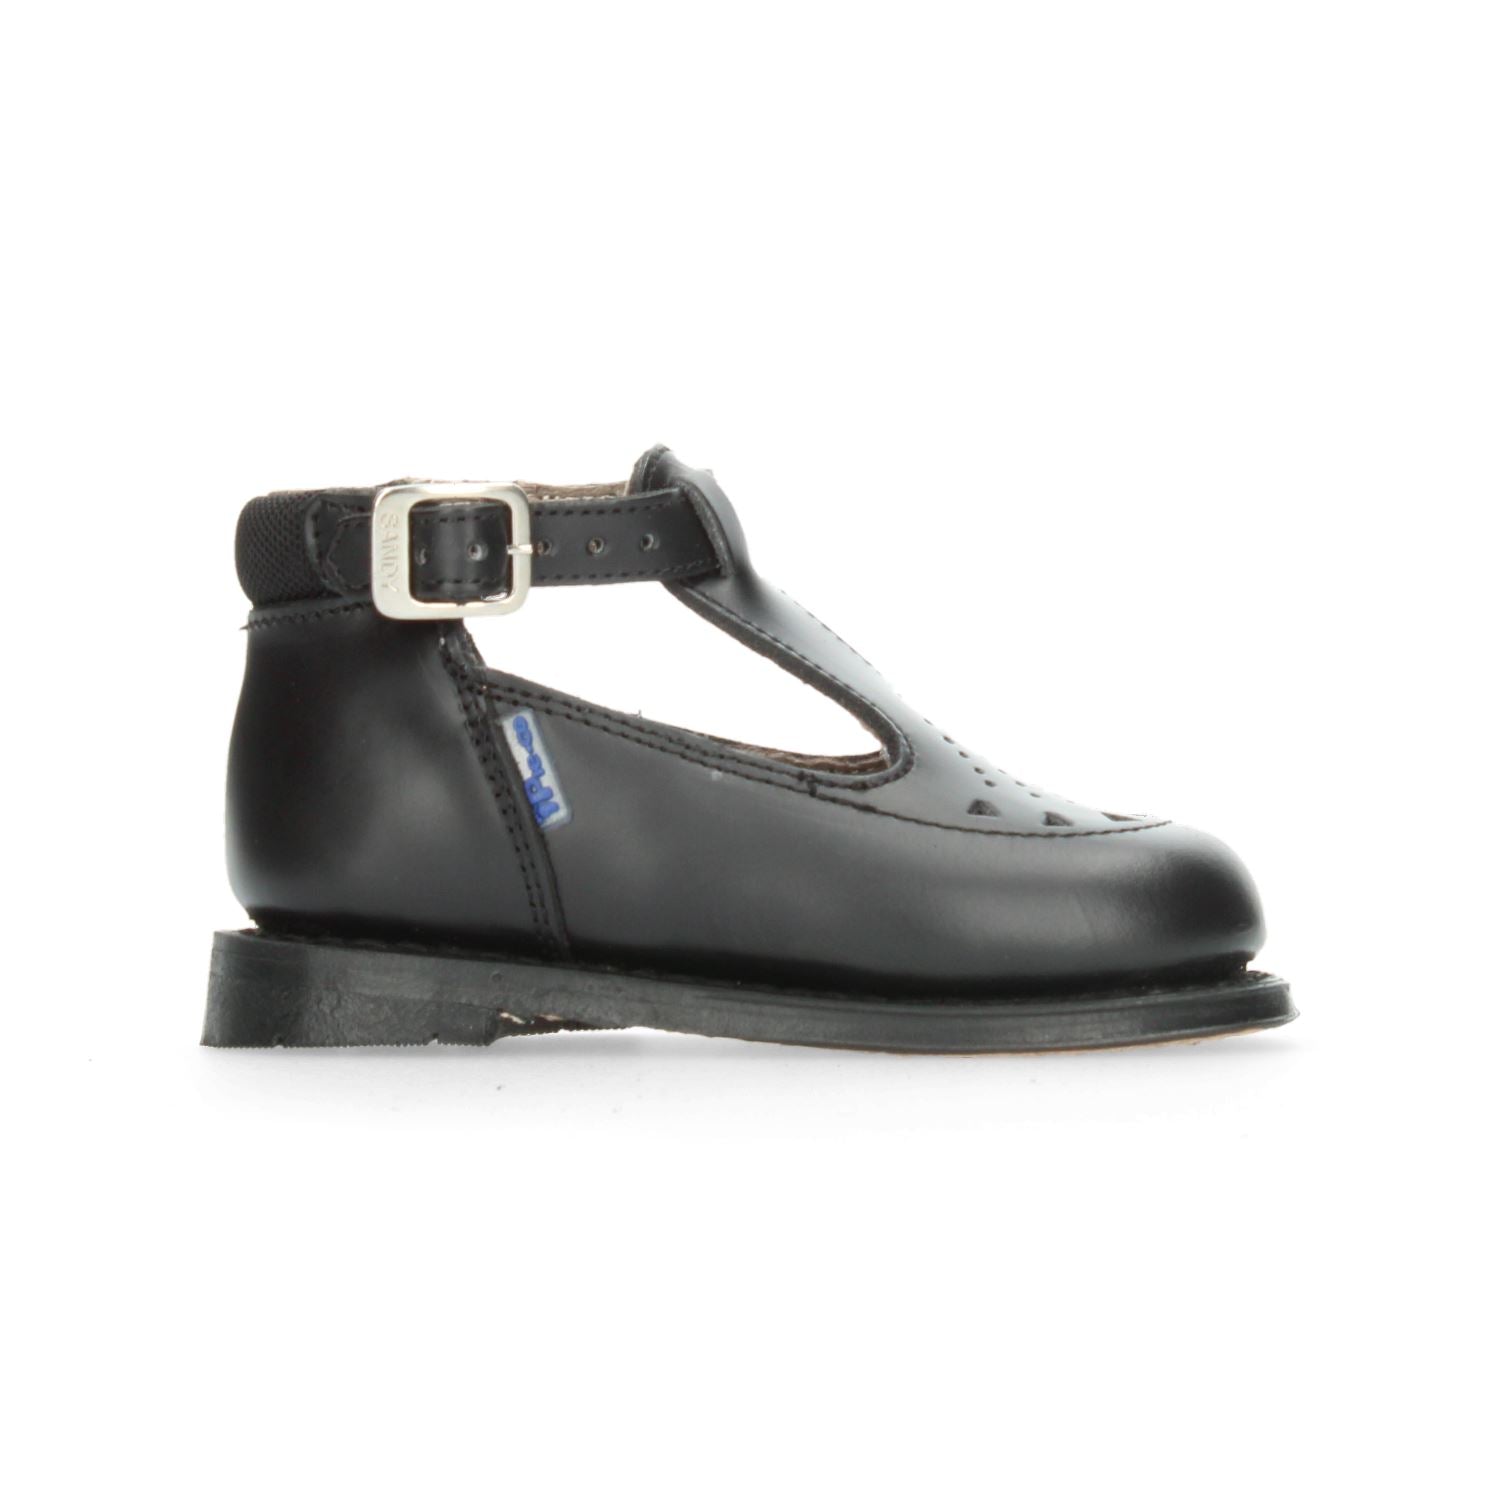 Zapato Ortopédico Pie-co Negro para Niña [PPP116] División_Calzado PIE-CO 